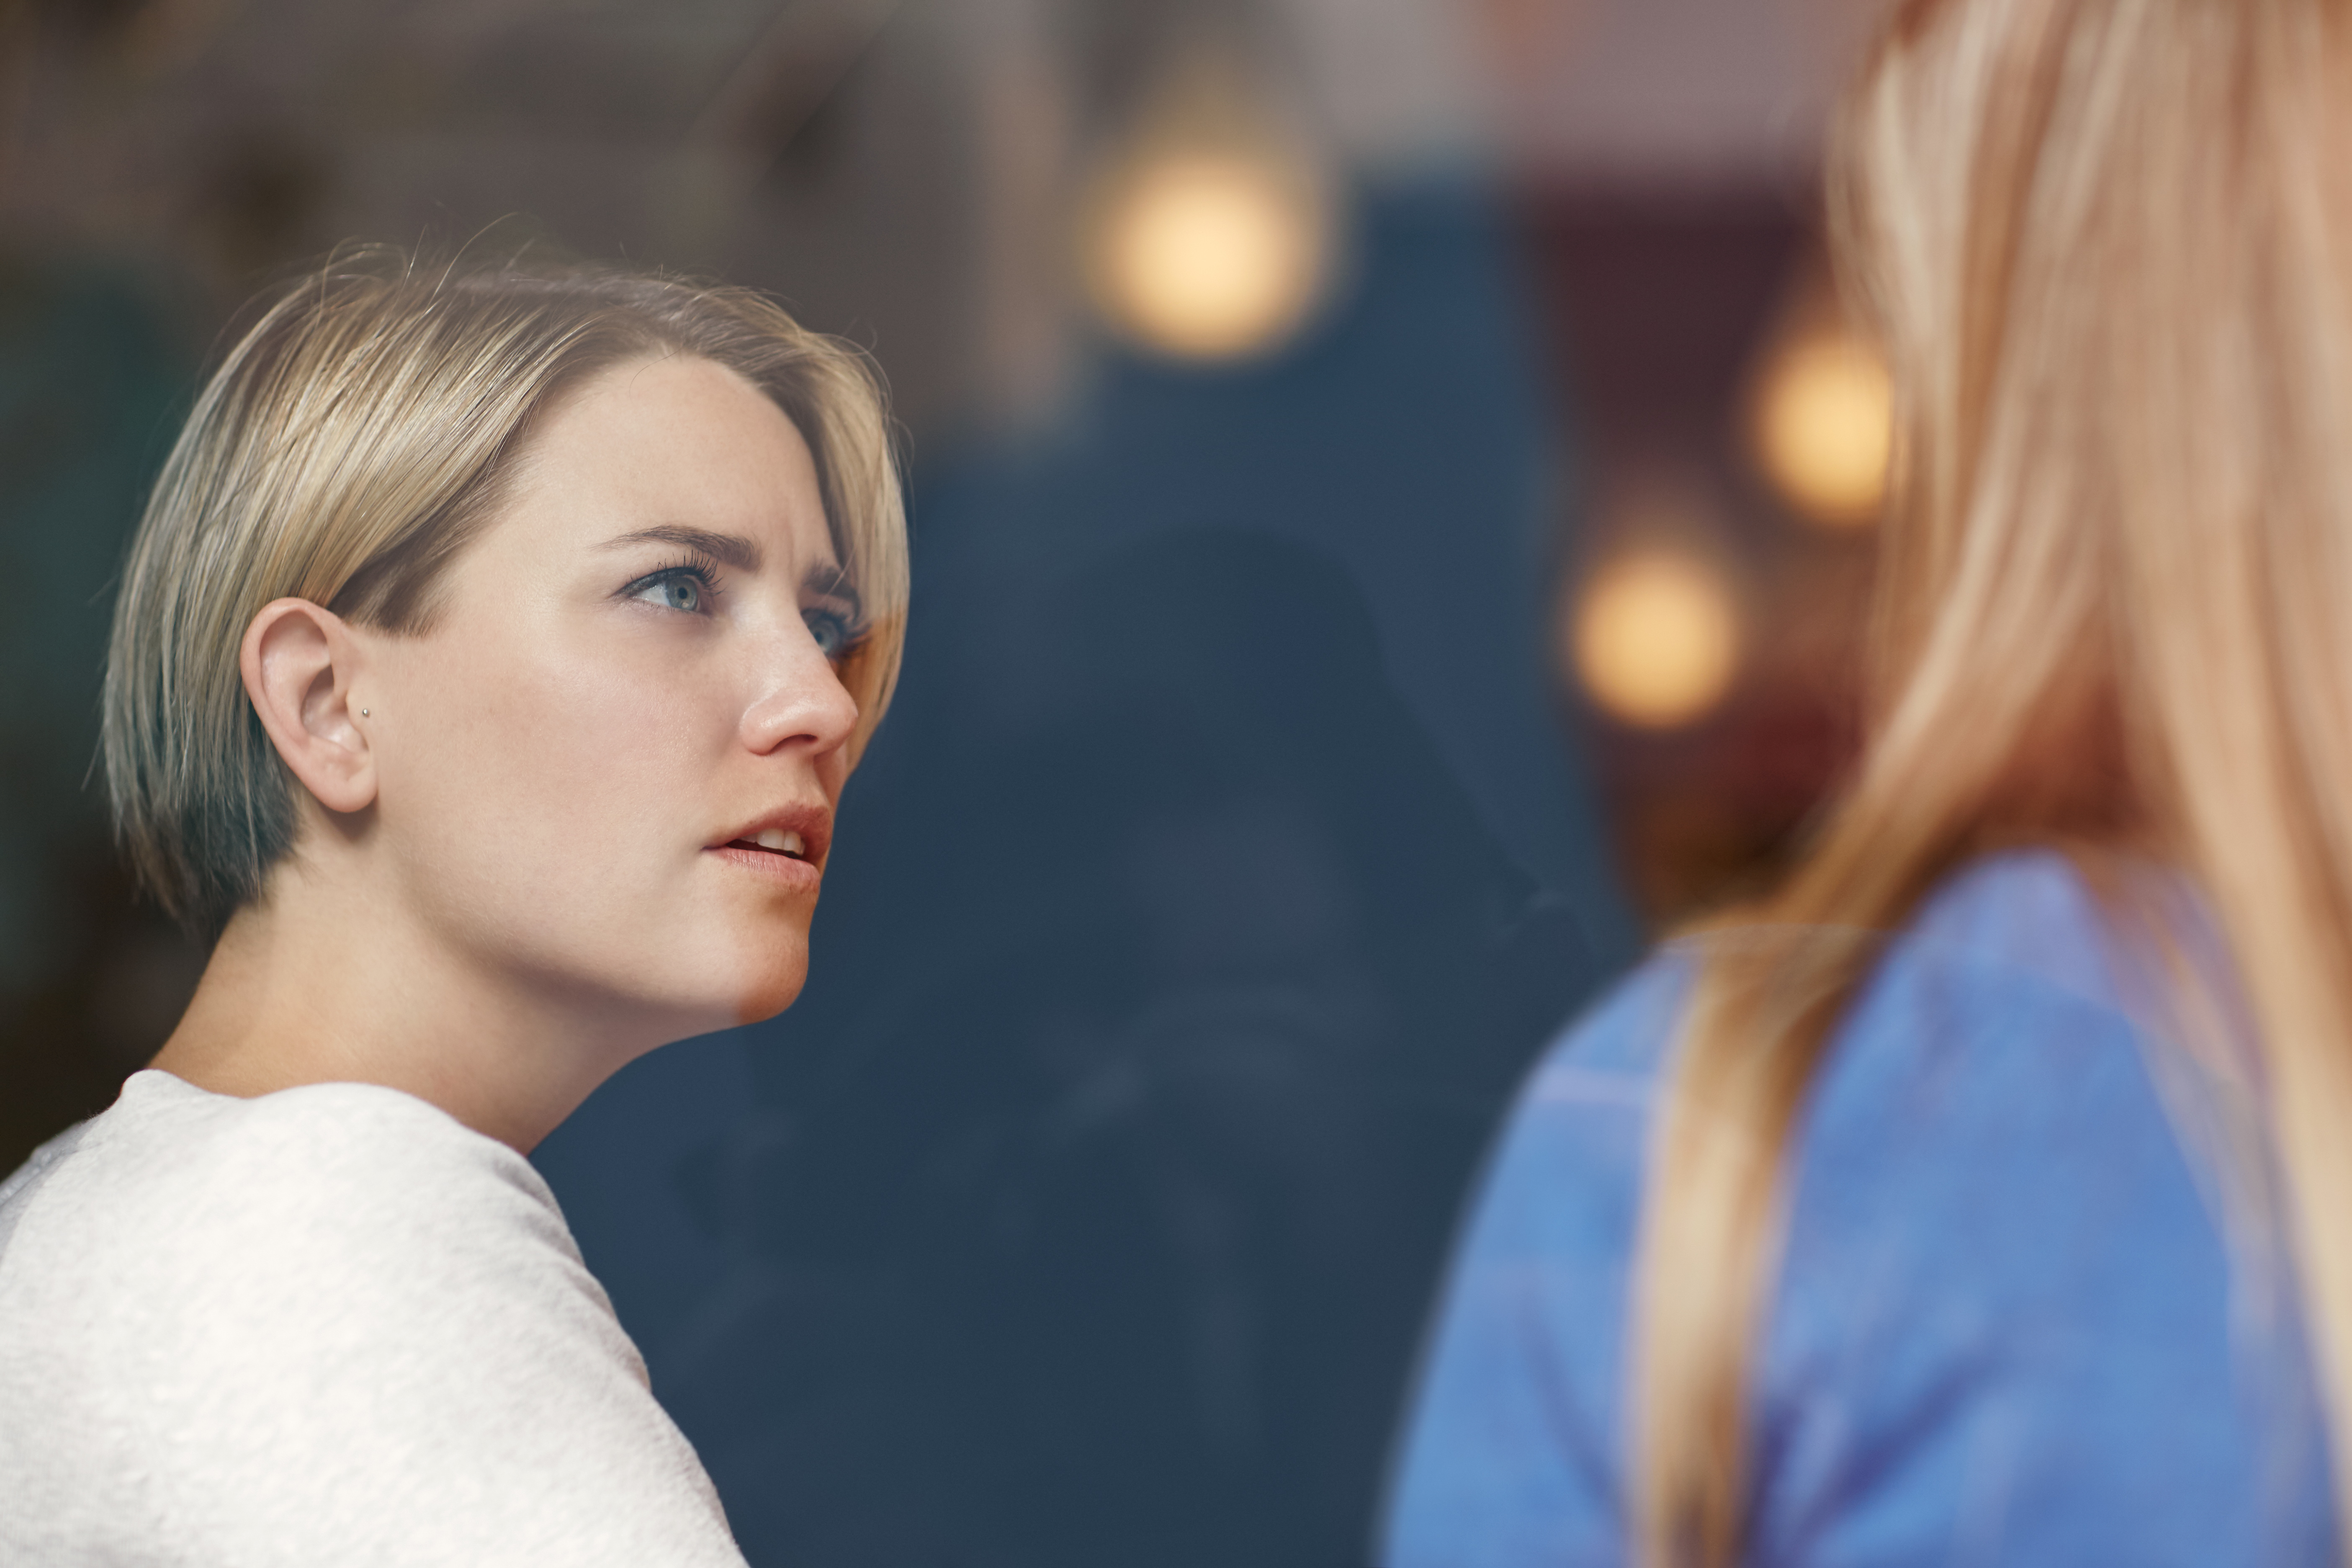 Une femme semble choquée en écoutant une autre femme | Source : Shutterstock